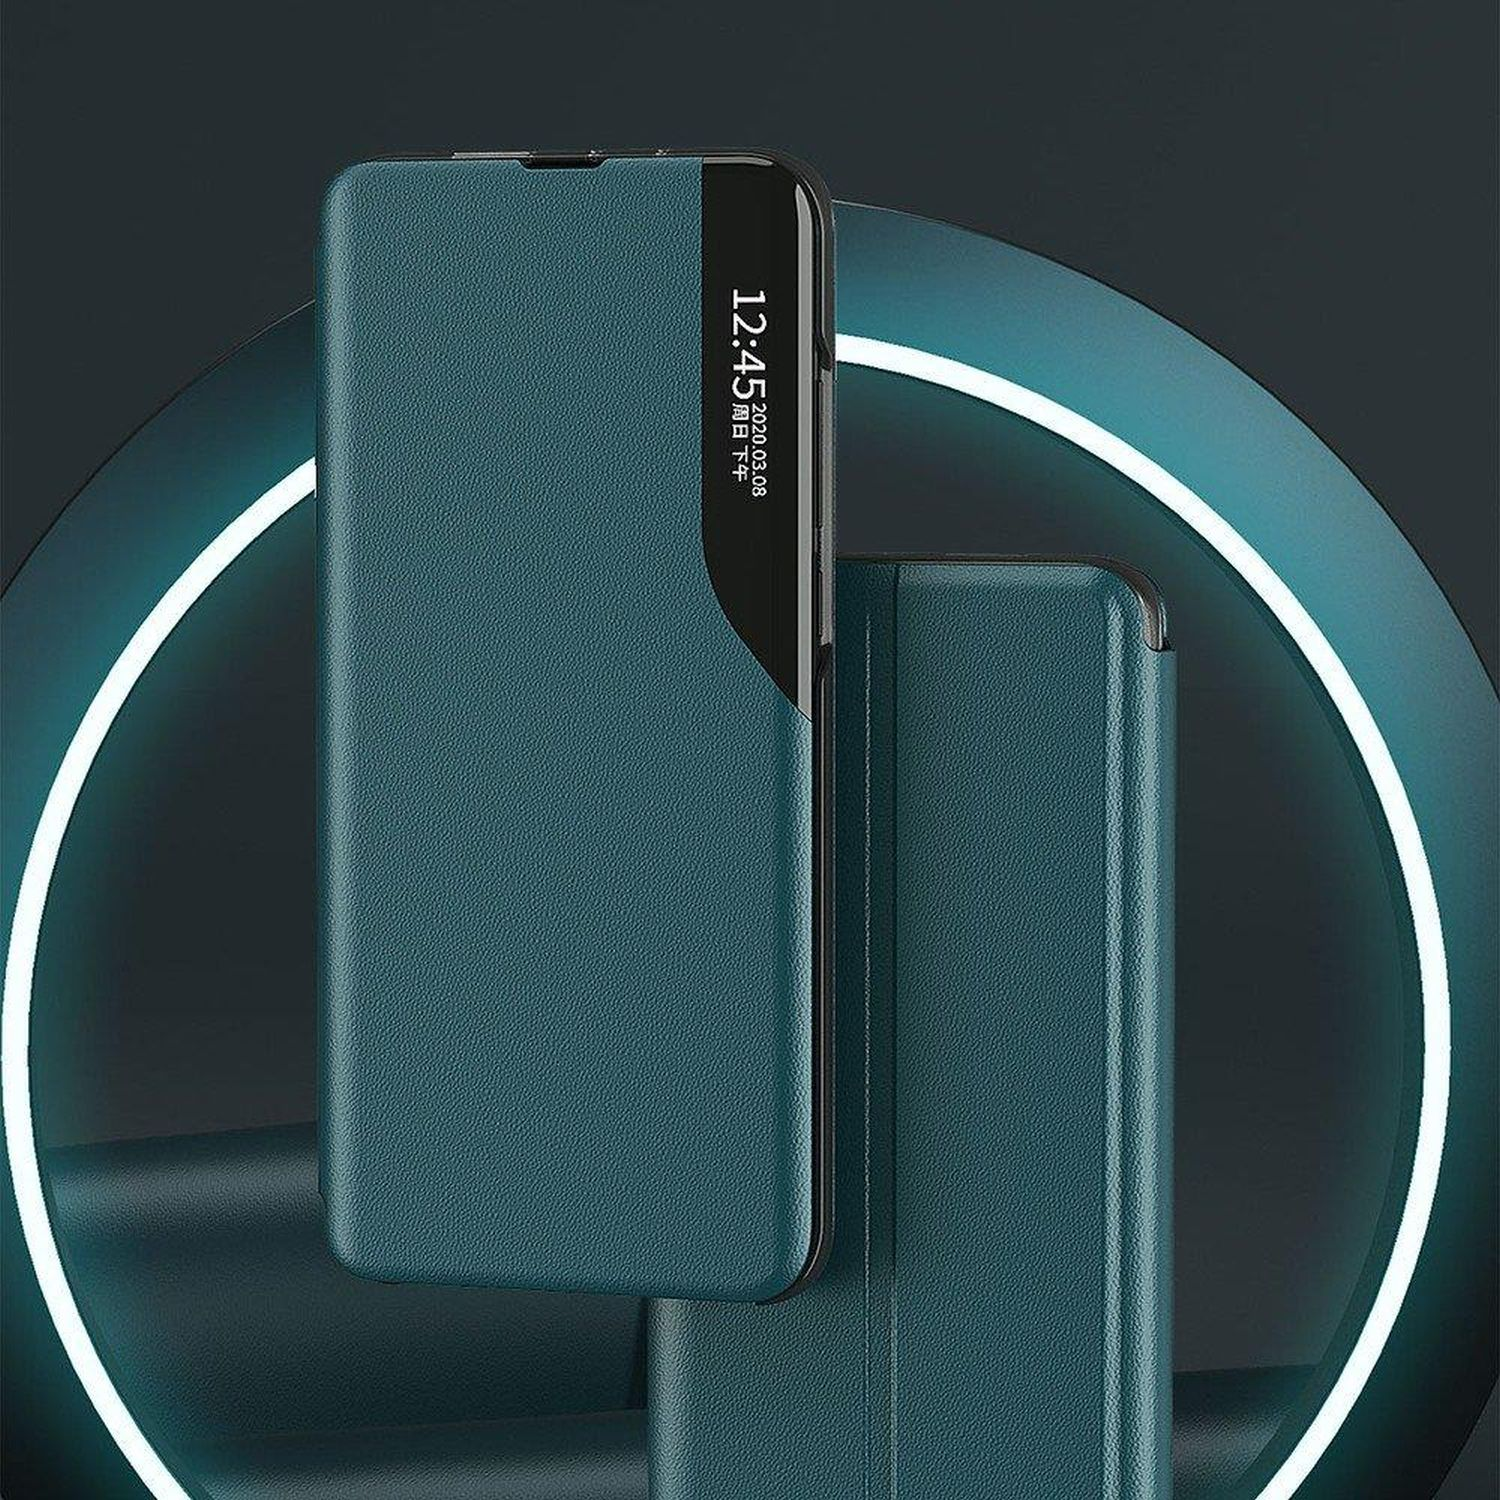 Pro, Smart Rot P40 Bookcover, Case, View COFI Huawei,